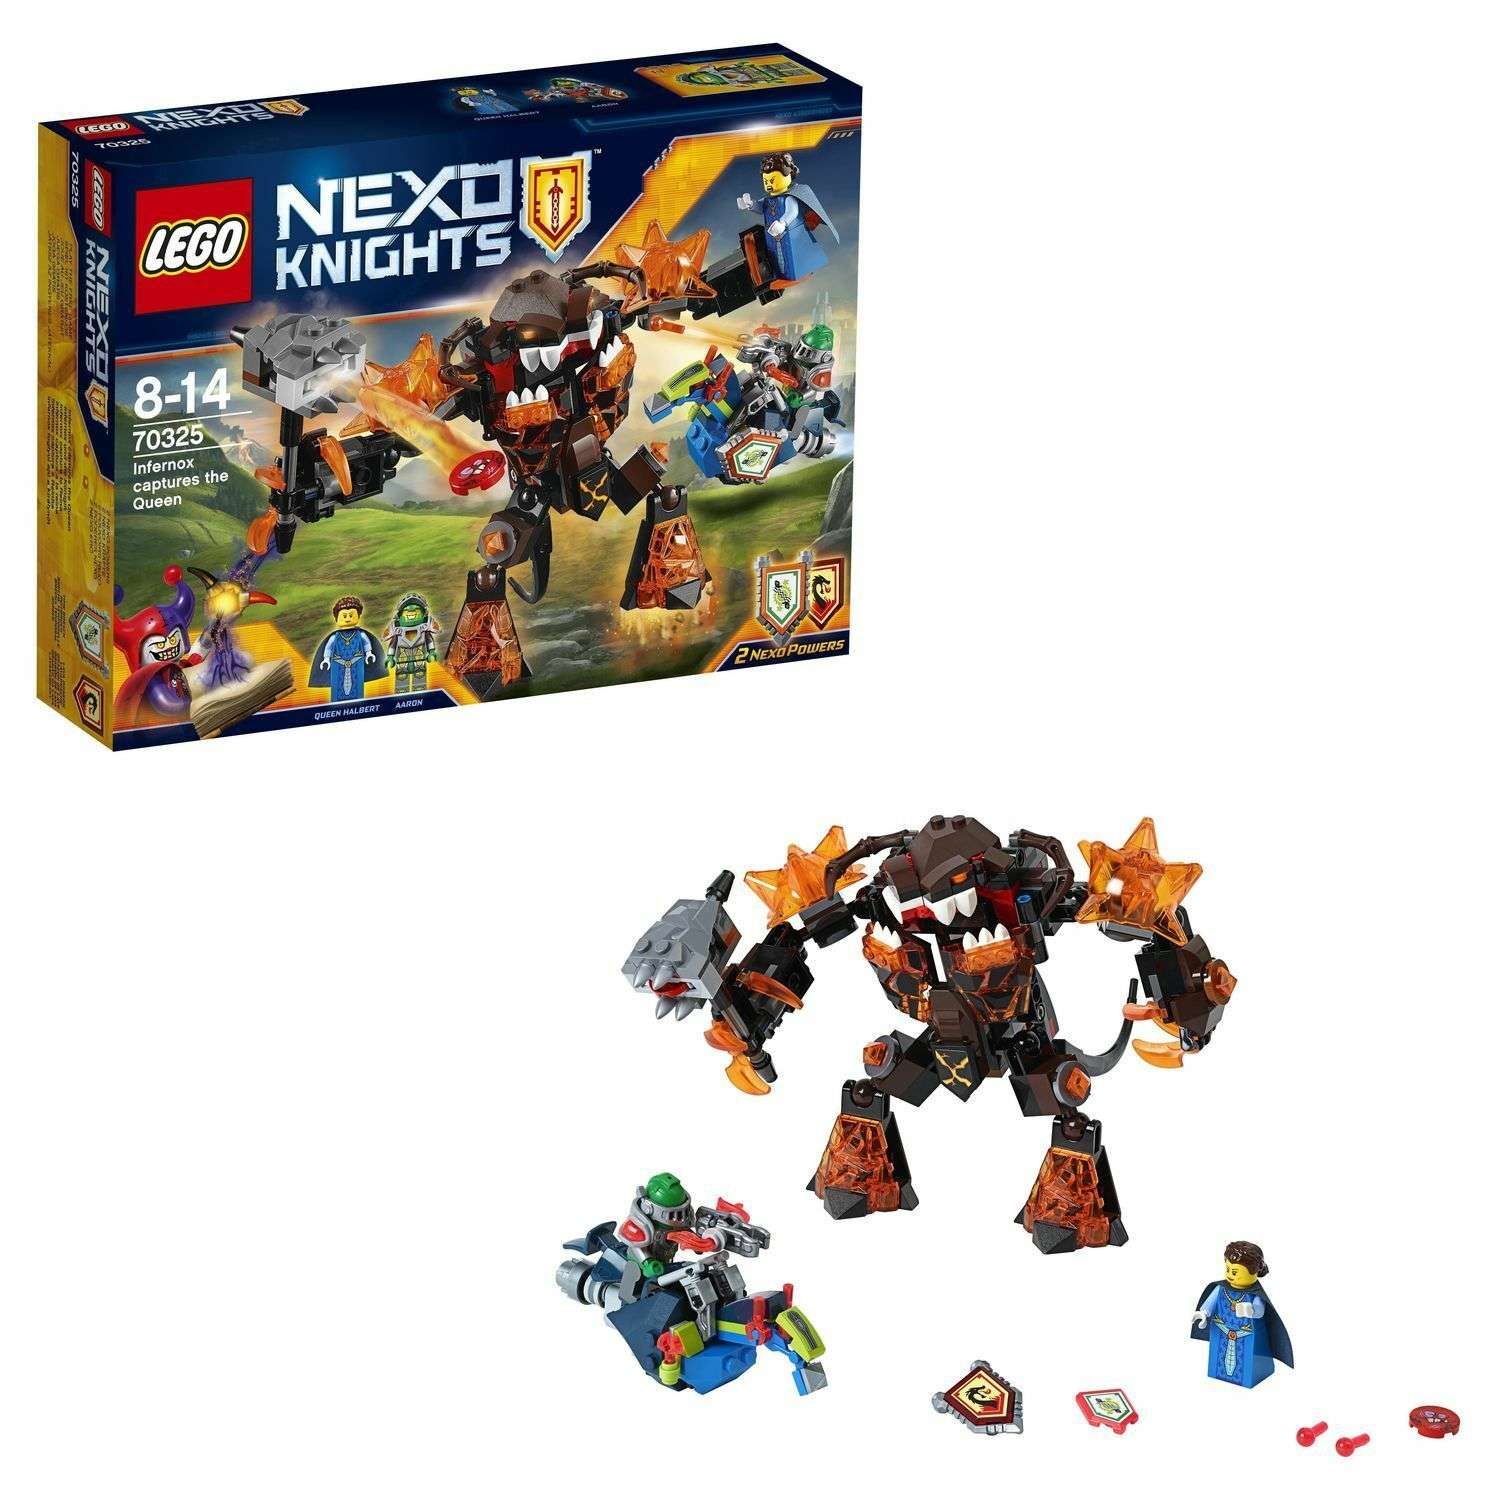 Конструктор LEGO Nexo Knights Инфернокс похищает королеву (70325) - фото 1